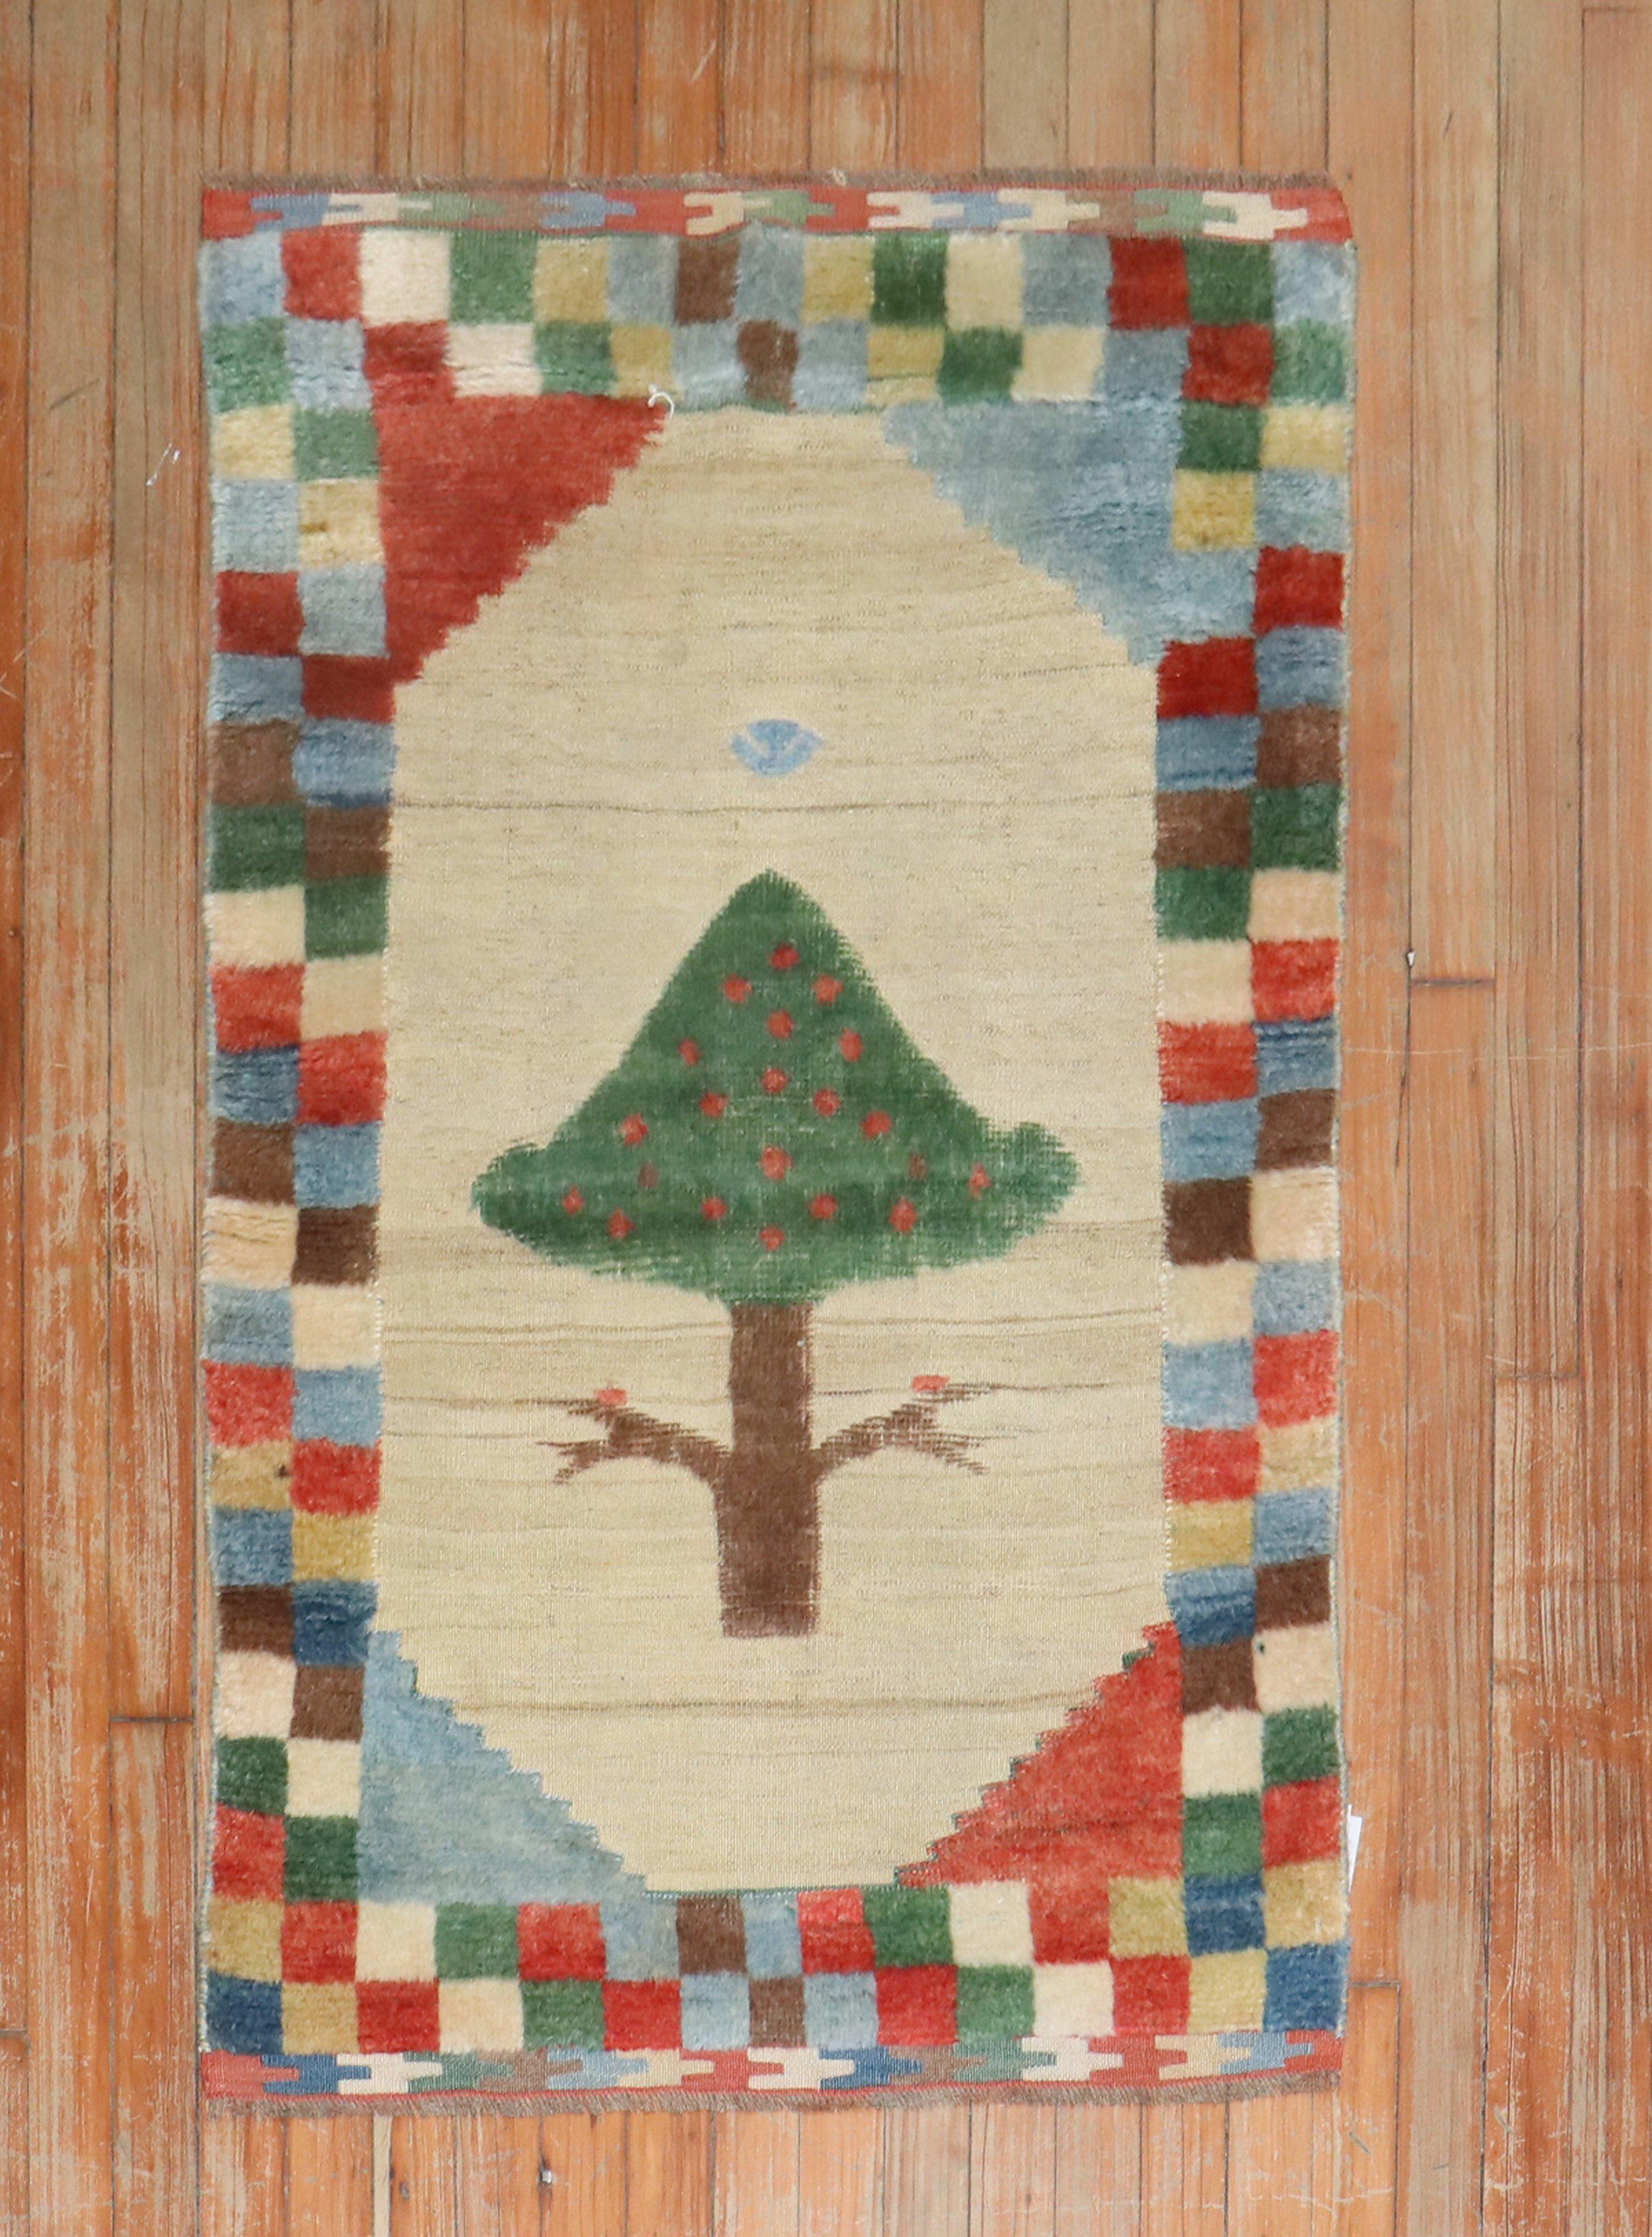 Gabbeh-Teppich aus dem späten 20. Jahrhundert mit einer bunten karierten Bordüre, umgeben von einem freistehenden Baum auf Kamelgrund, gewebt in Souf-Technik

Maße: 2'6'' x 3'11''

Souf-Teppiche sind eine sehr selten anzutreffende Technik, da sie